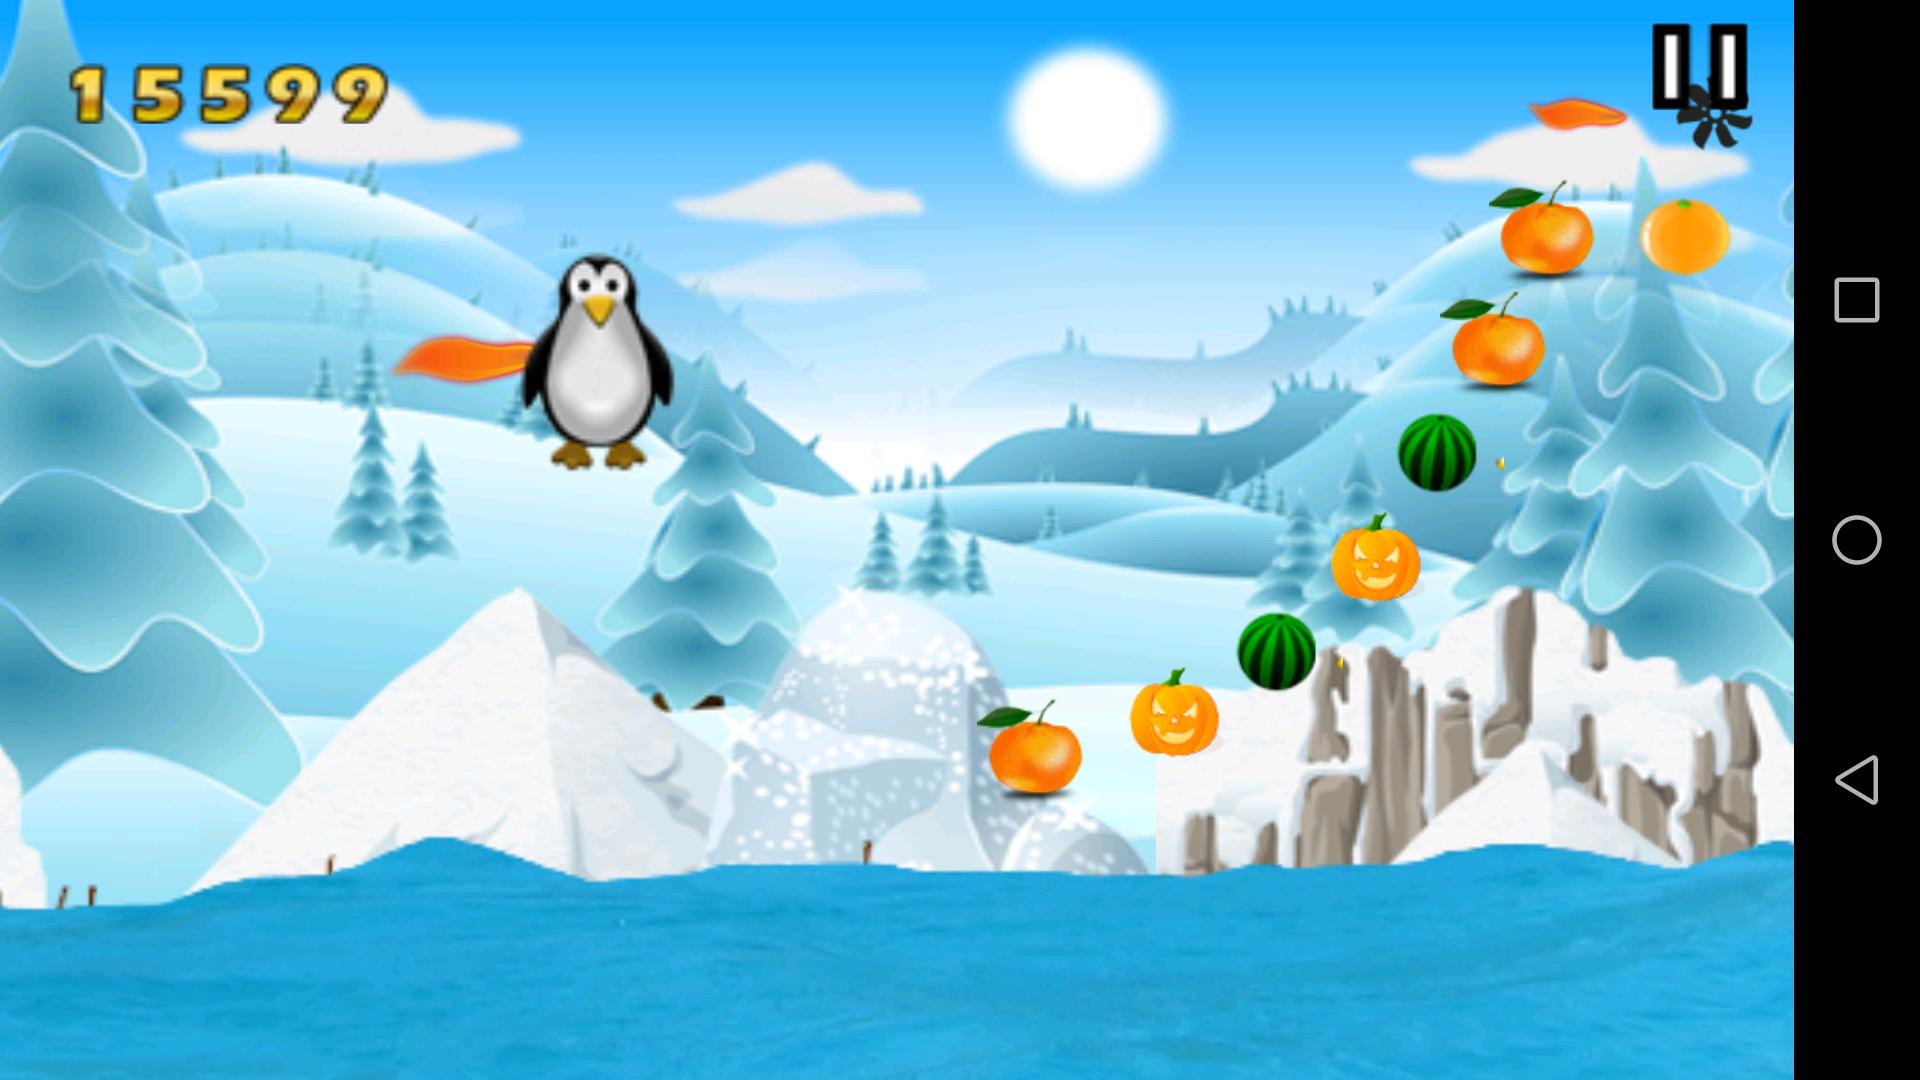 Пингвин бита игра. Пингвин игра виндовс 10. Зимний фон игры Пингвин. Программа для игры Пингвин. Игра Пингвин по льду прыгает и собирает монетки.